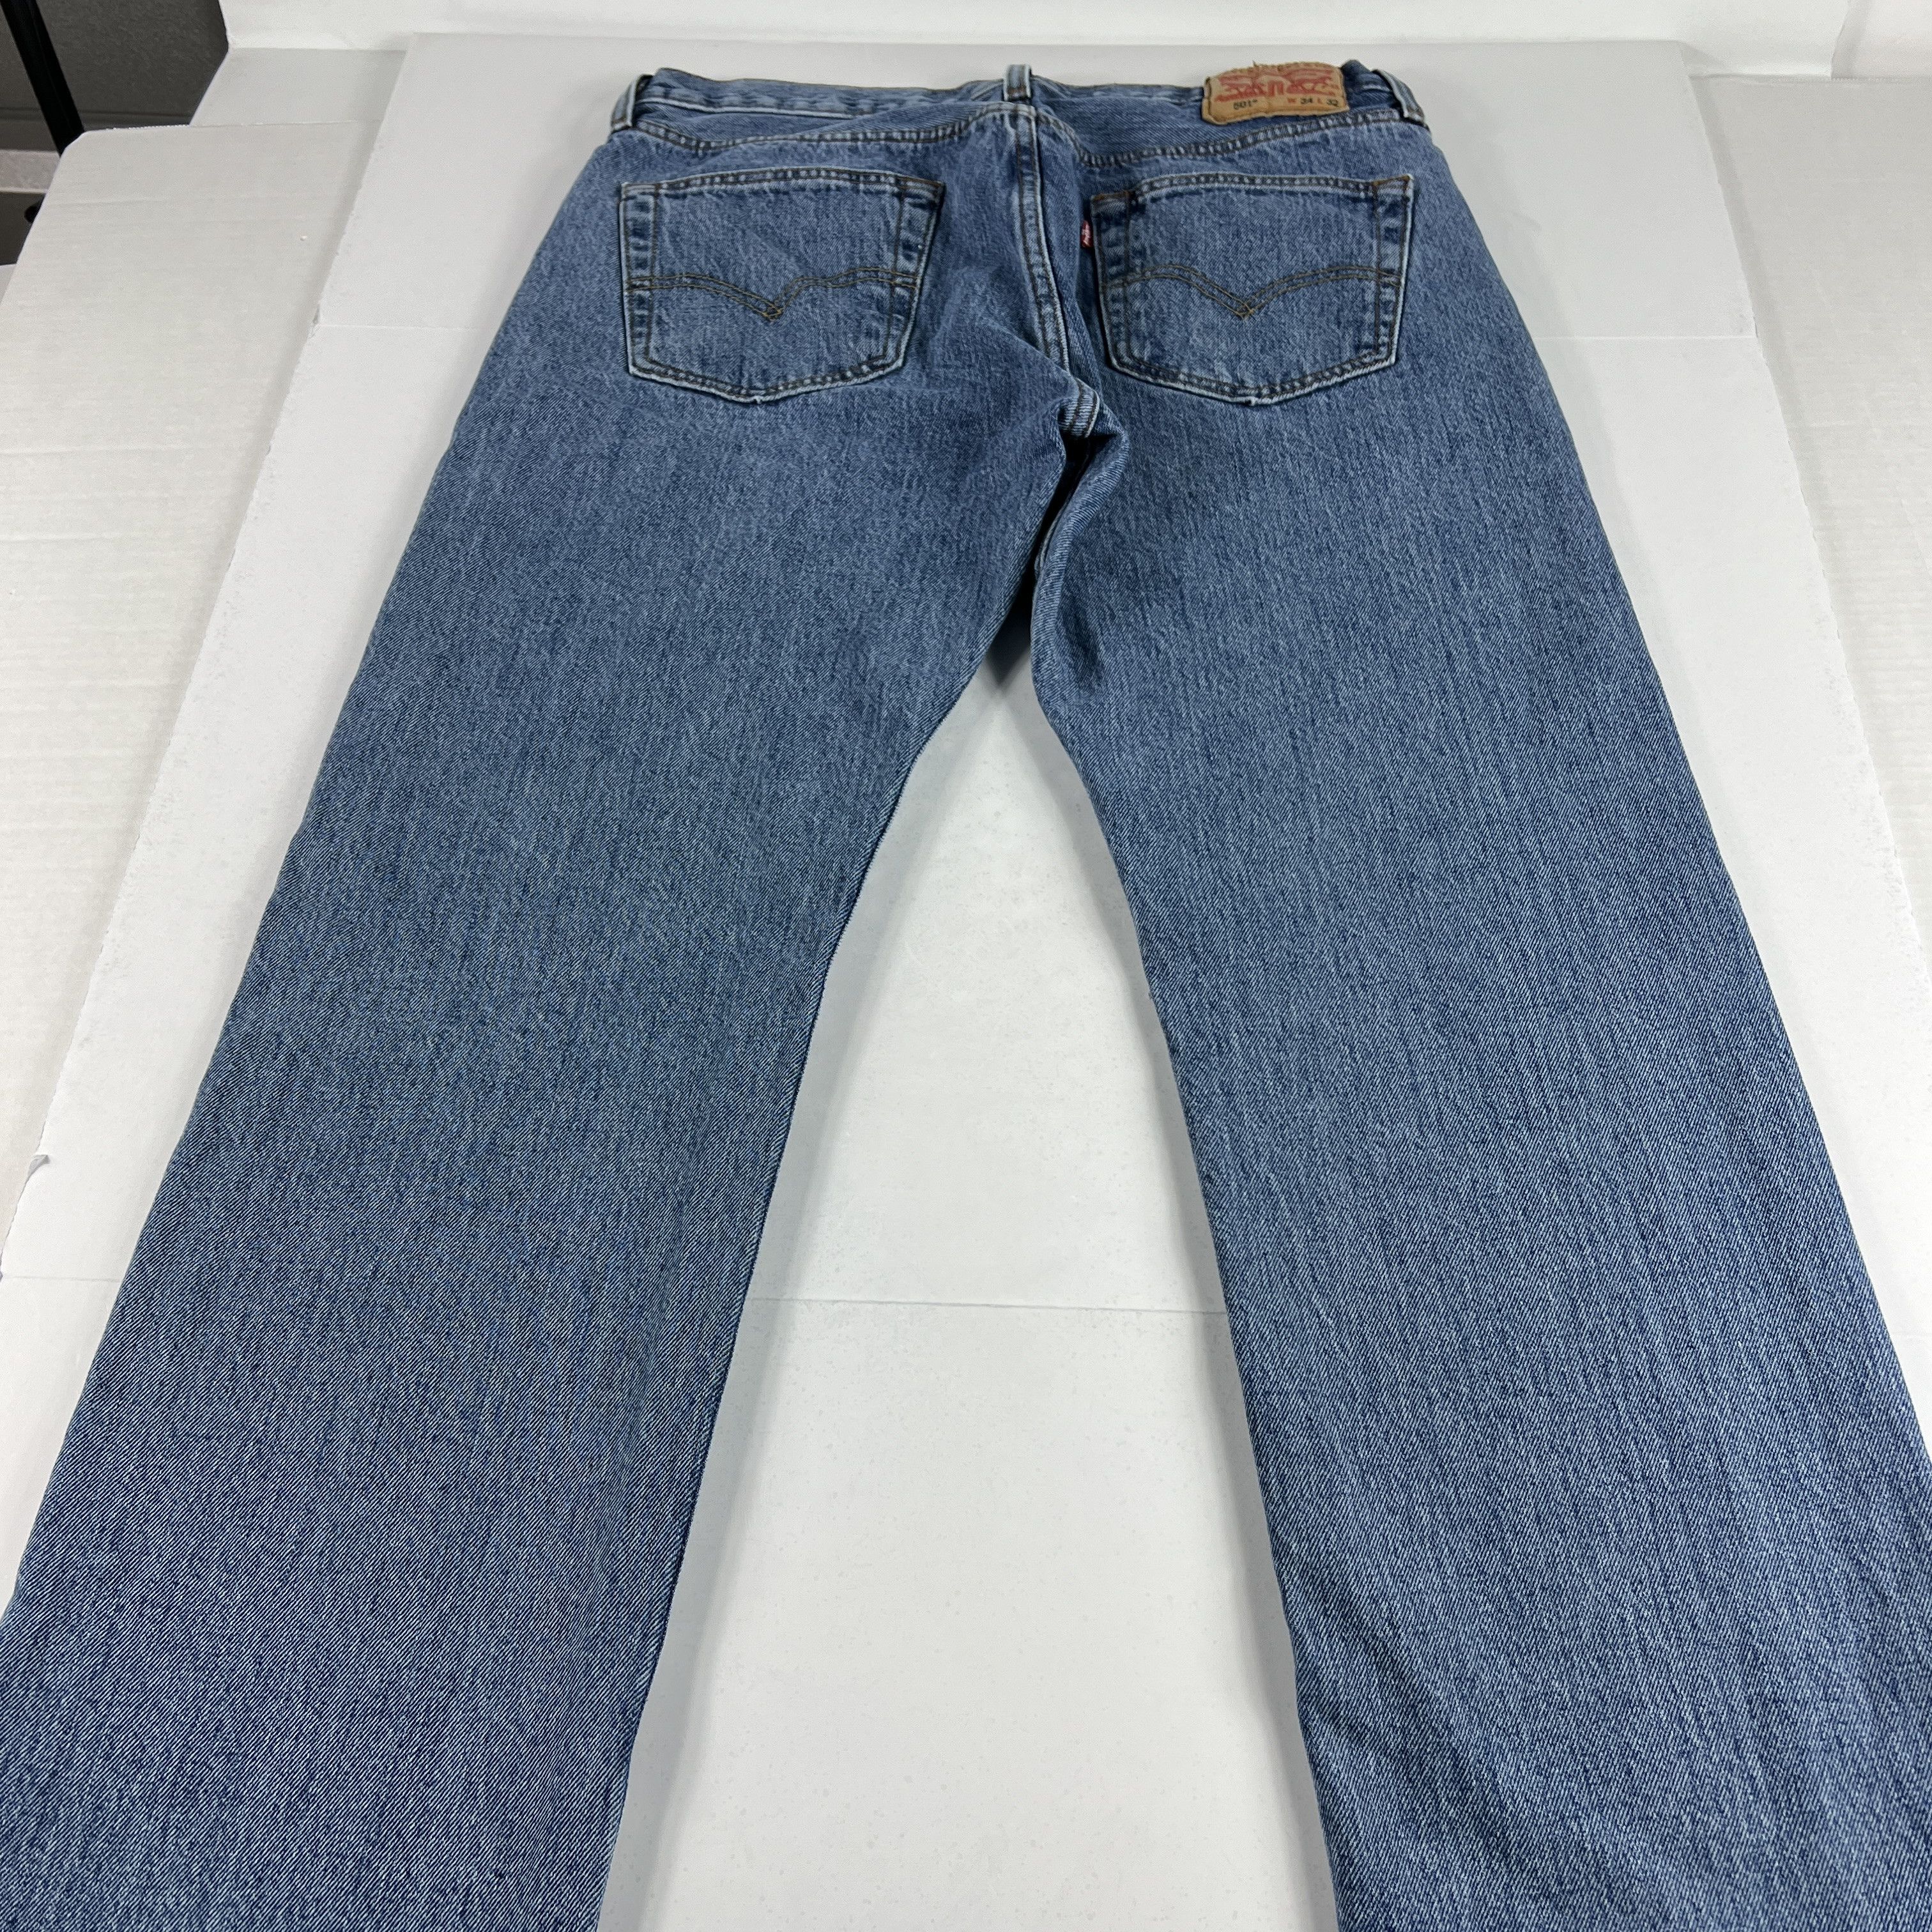 Levi's Levi's Jeans 501 XX Original Straight Blue Cotton Denim Size US 33 - 11 Thumbnail